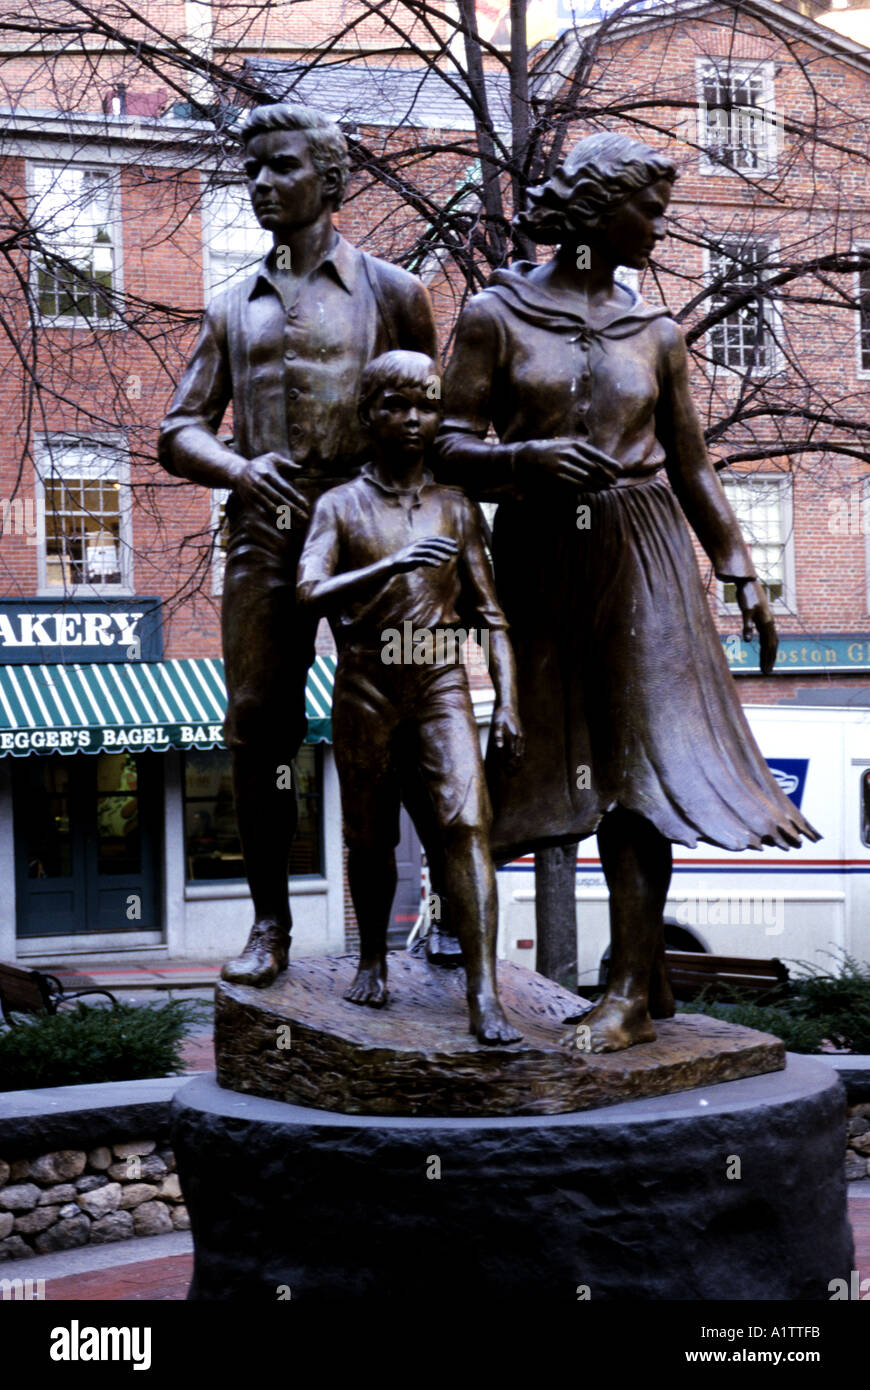 Groupe en bronze (père, mère et enfant) COMMÉMORATION DE LA GRANDE FAMINE irlandaise des années 1840 dans une rue de Boston USA Banque D'Images